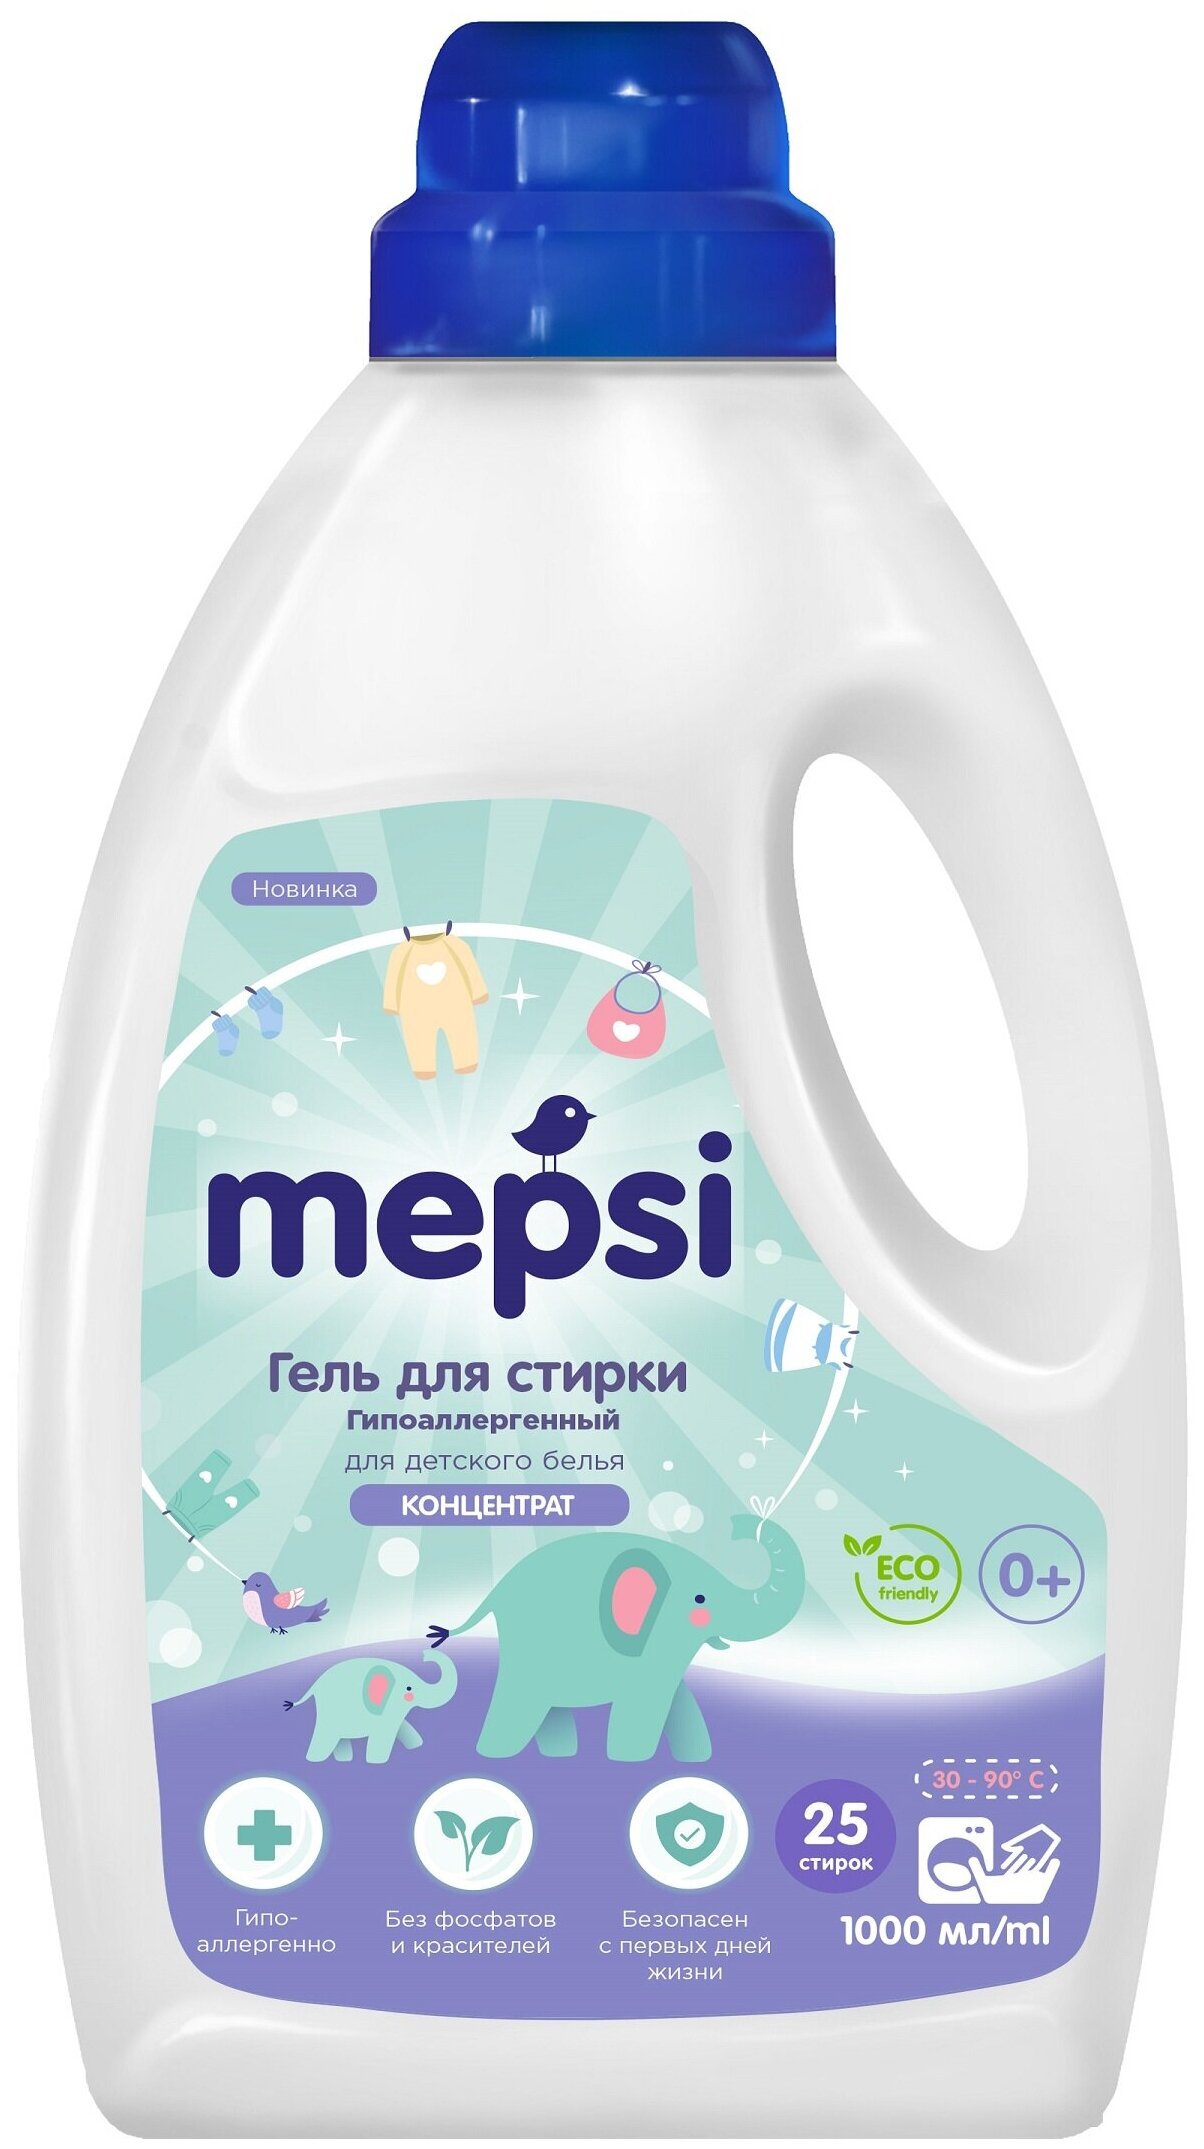 Mepsi - для детского белья